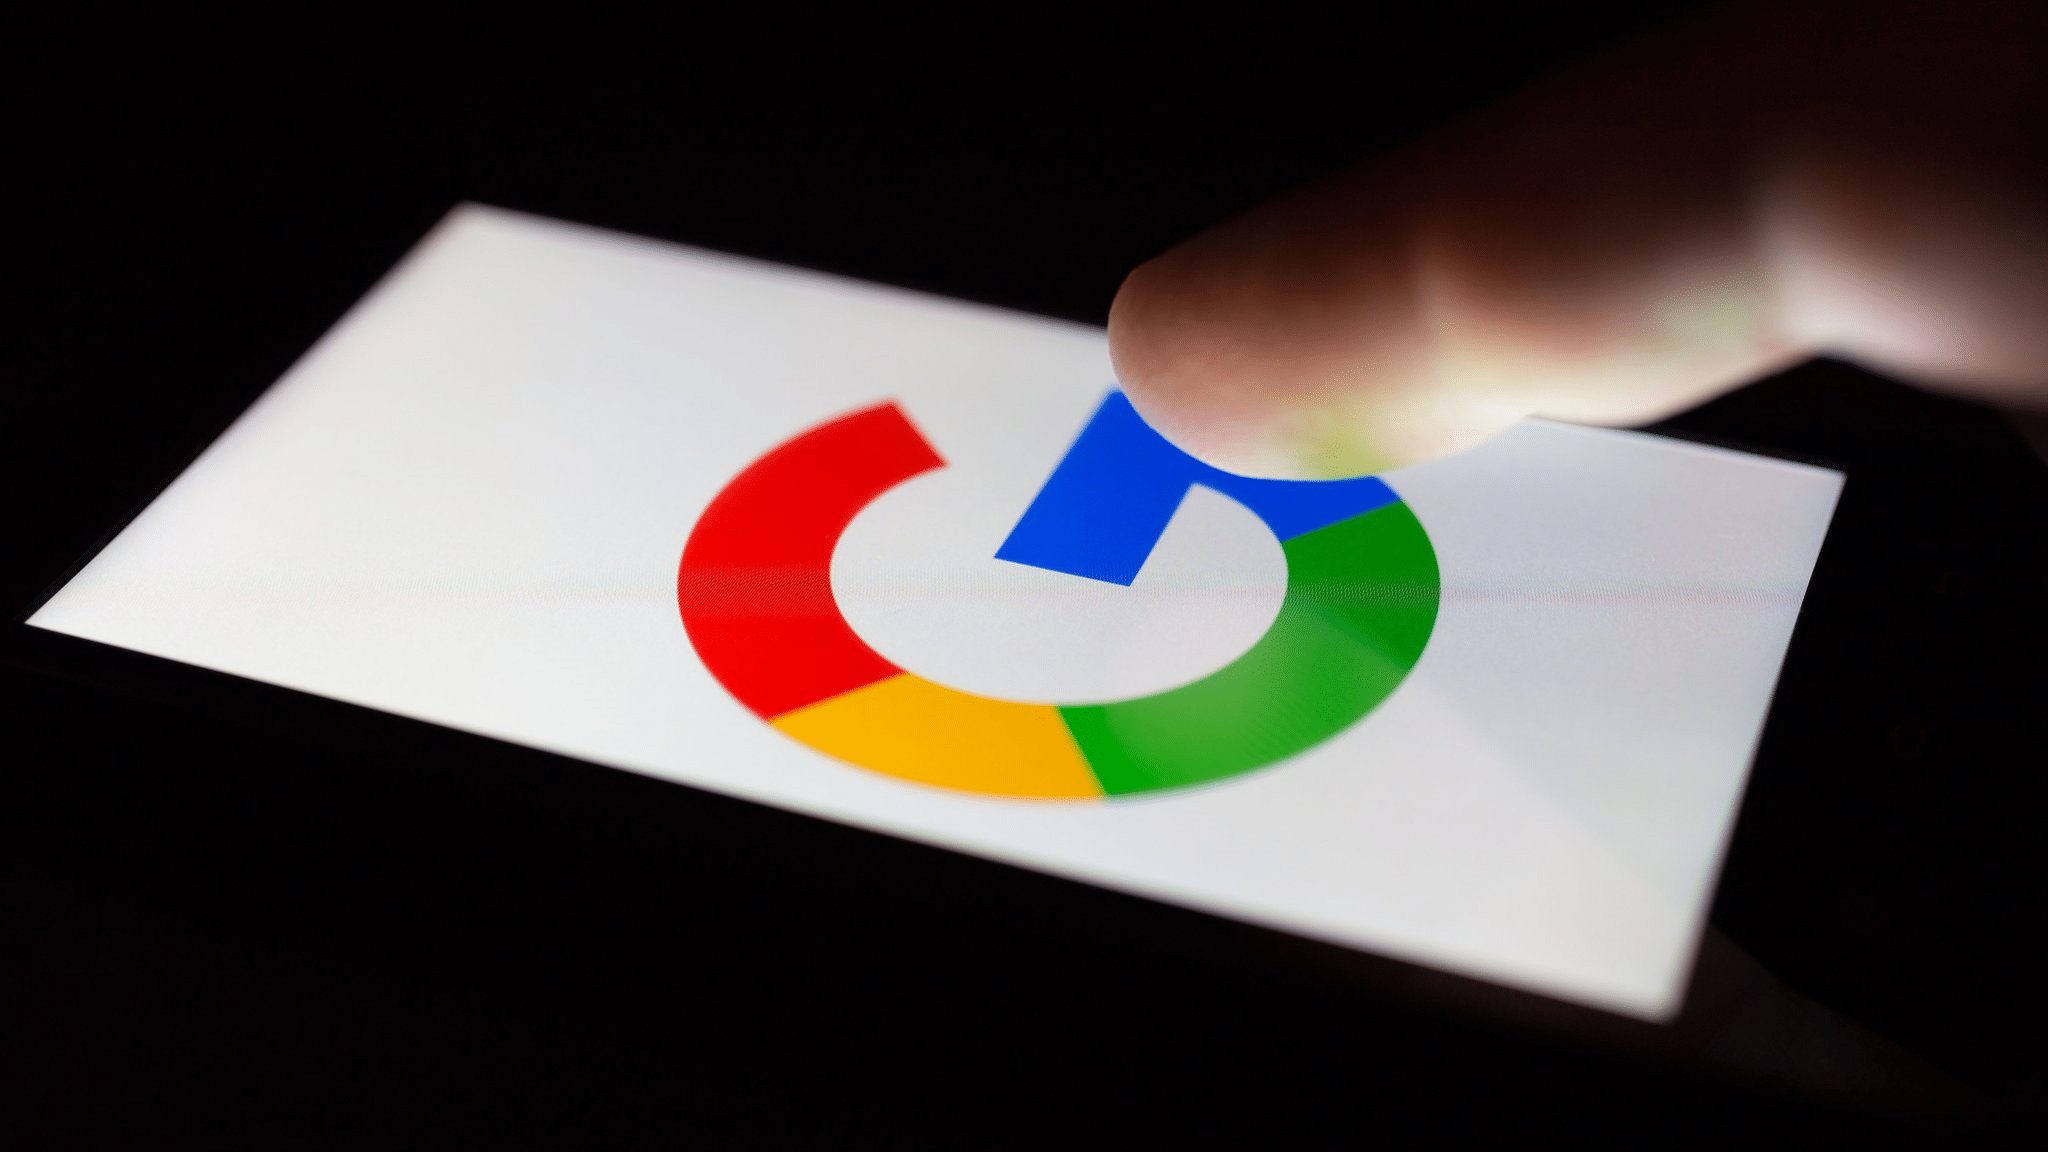 وزارة العدل الأمريكية تعتزم التحقيق مع جوجل بشأن مكافحة الاحتكار